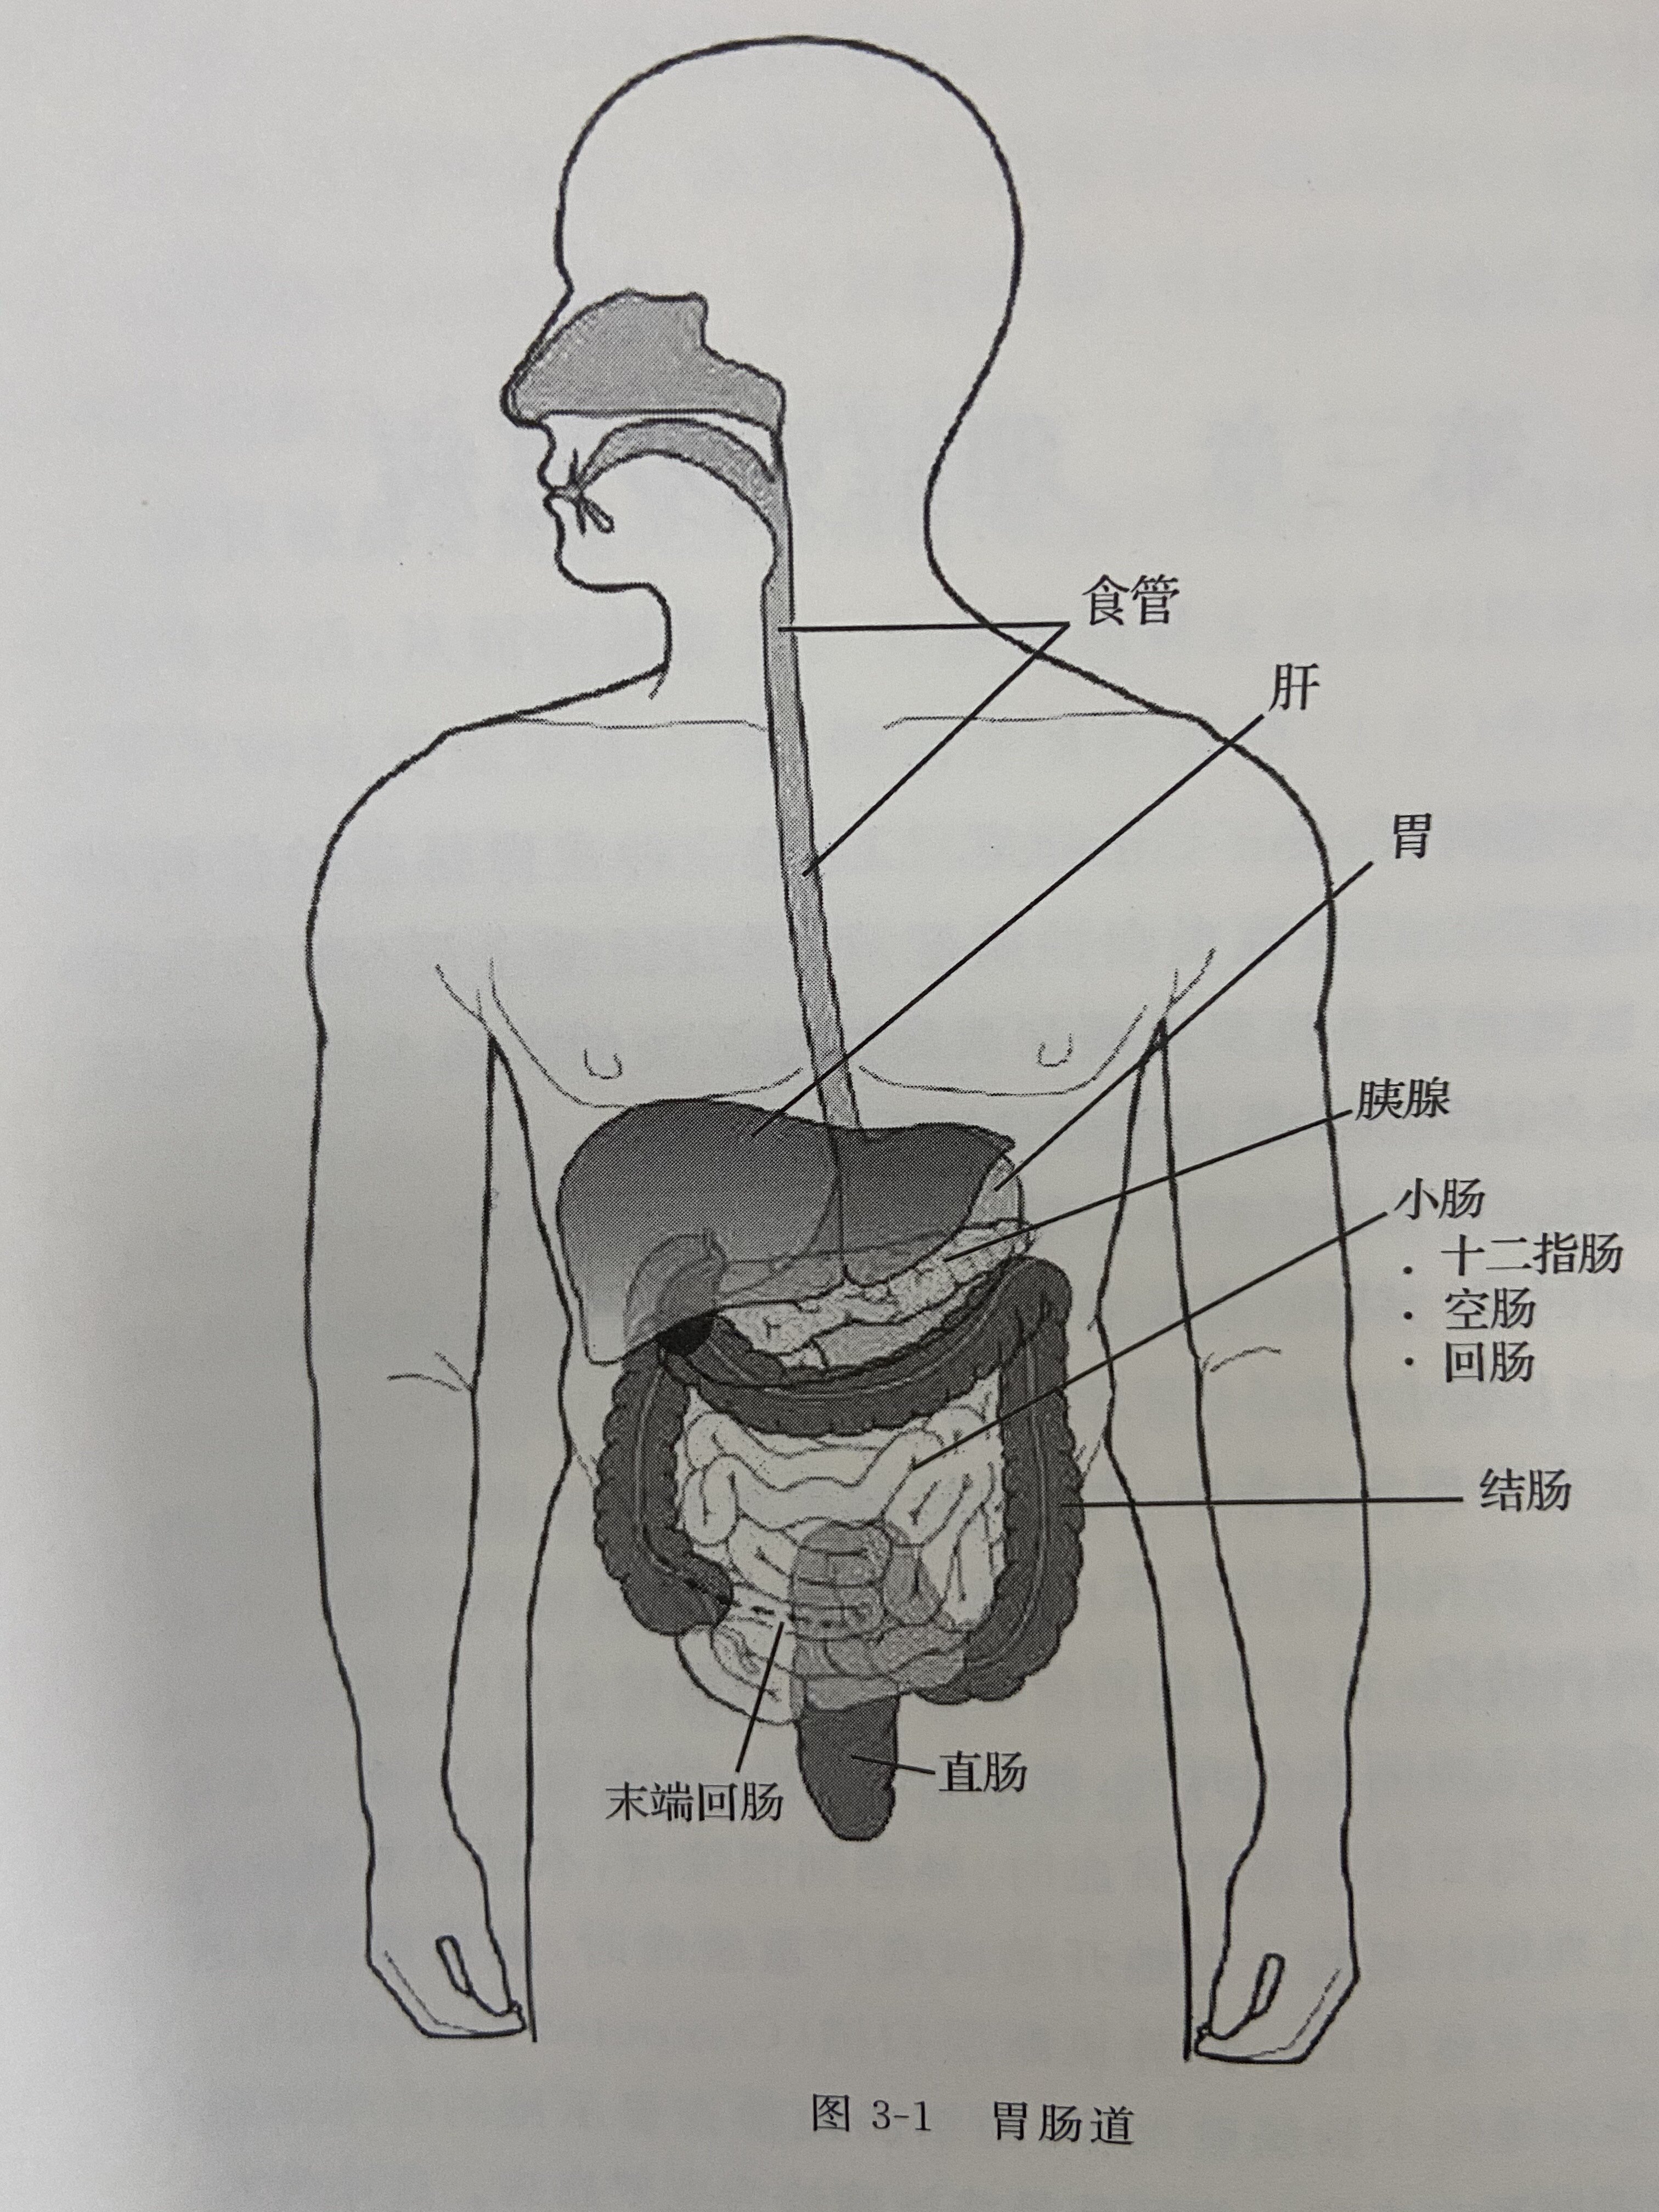 胃肠道从口腔开始,由食管,胃,小肠(十二指肠,空肠和回肠),结肠,直肠和